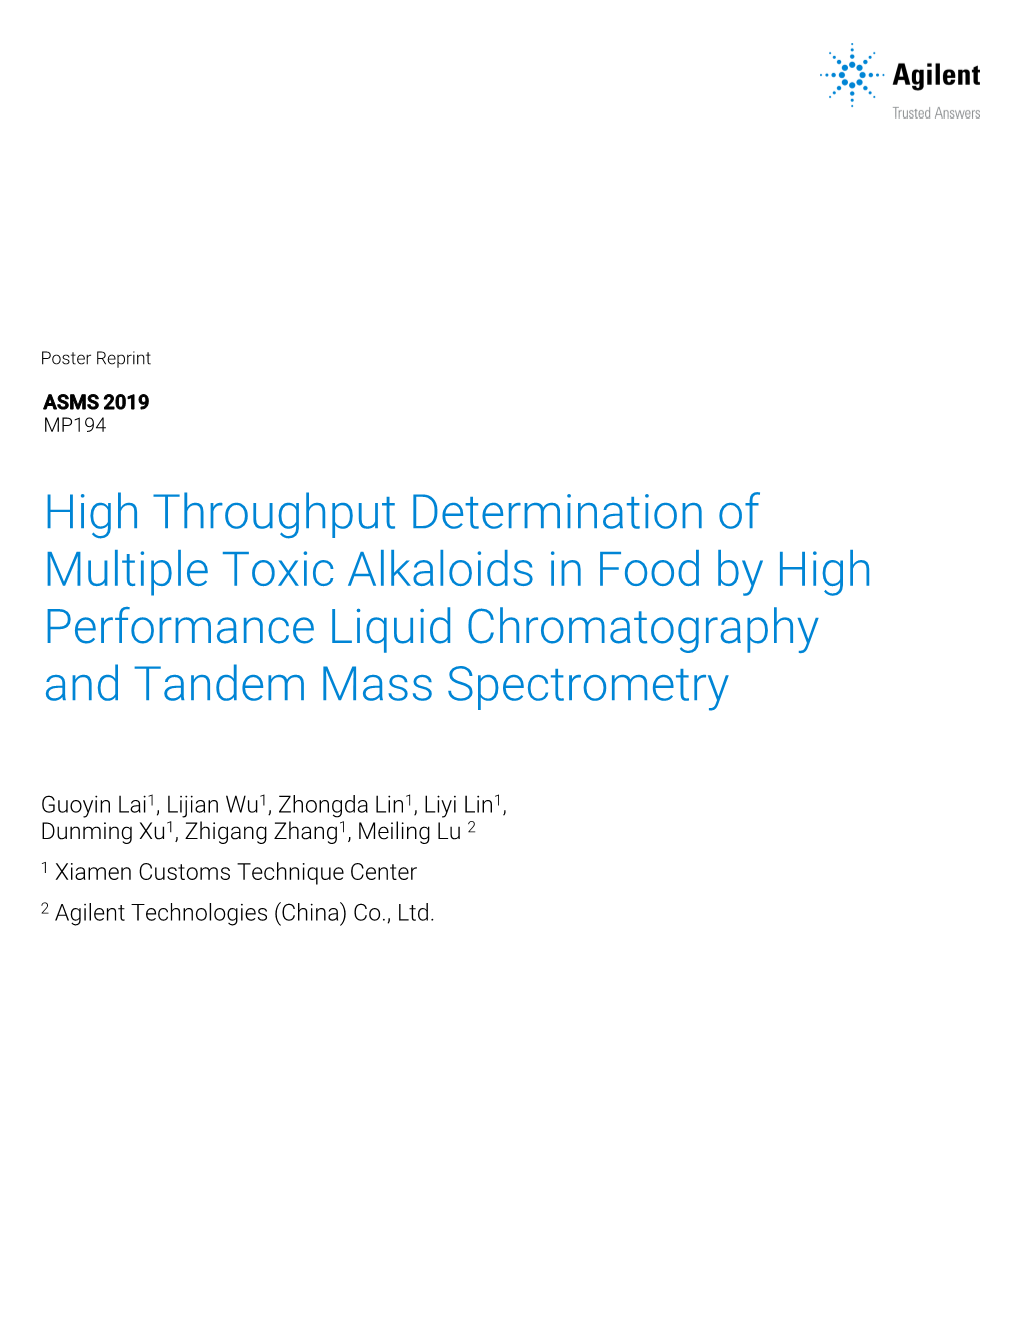 High Throughput Determination of Multi-Class Toxic Alkaloids In